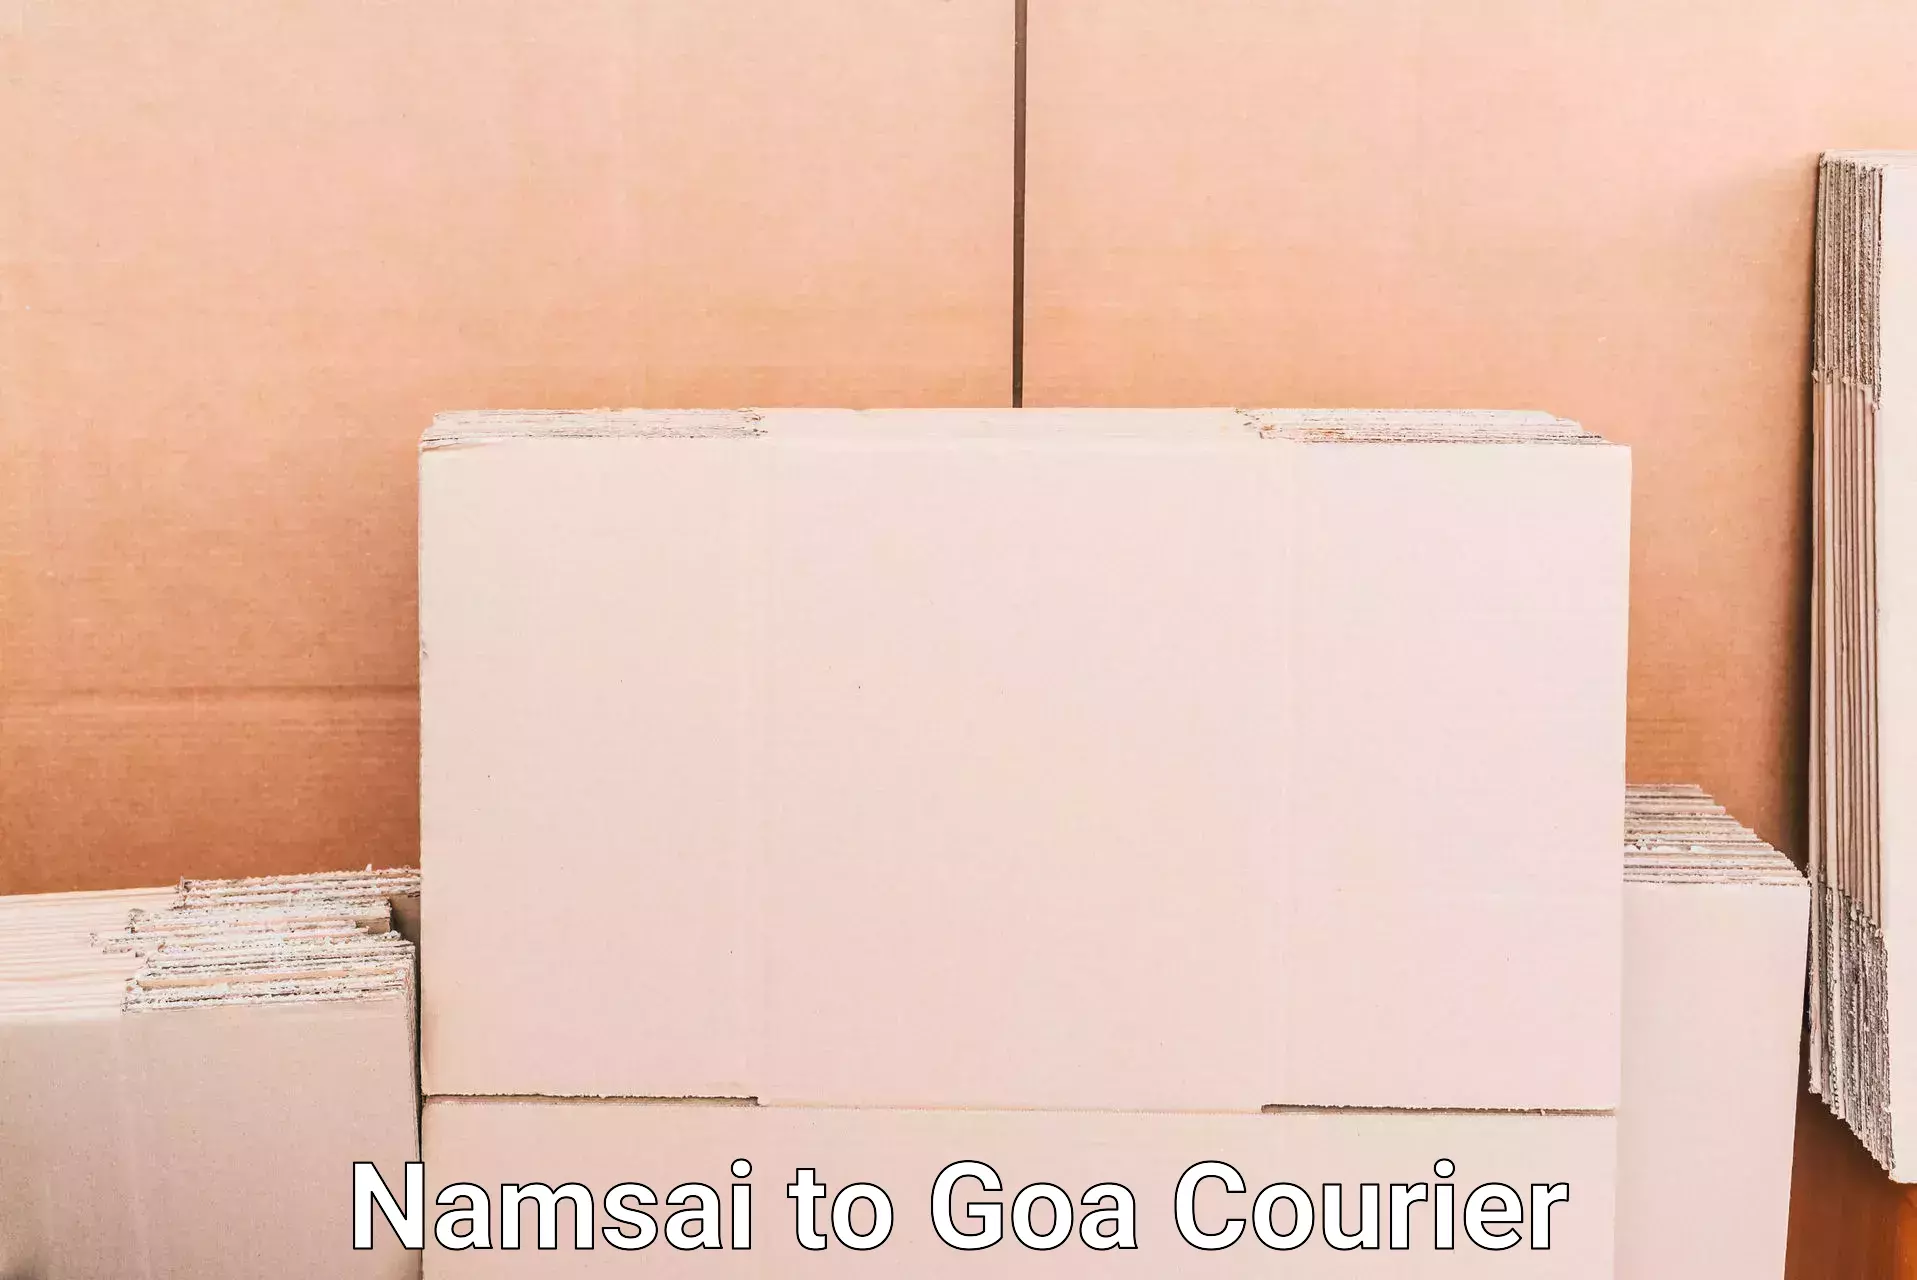 Luggage delivery app Namsai to Goa